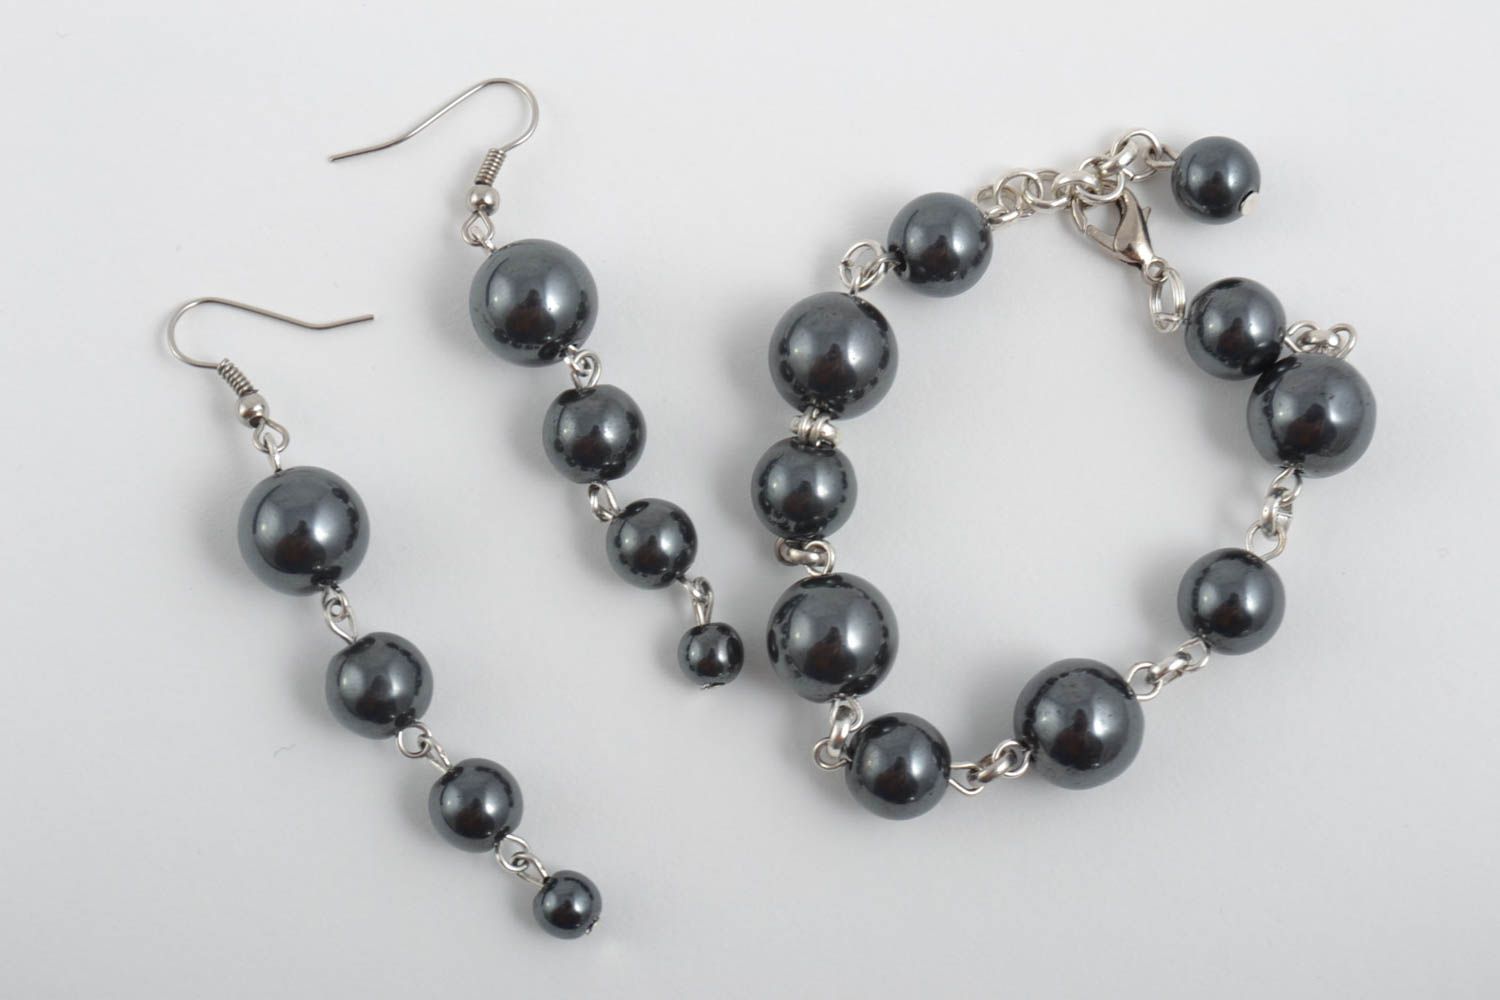 Handmade jewelry set gemstone jewelry bead bracelet dangling earrings gift ideas photo 2